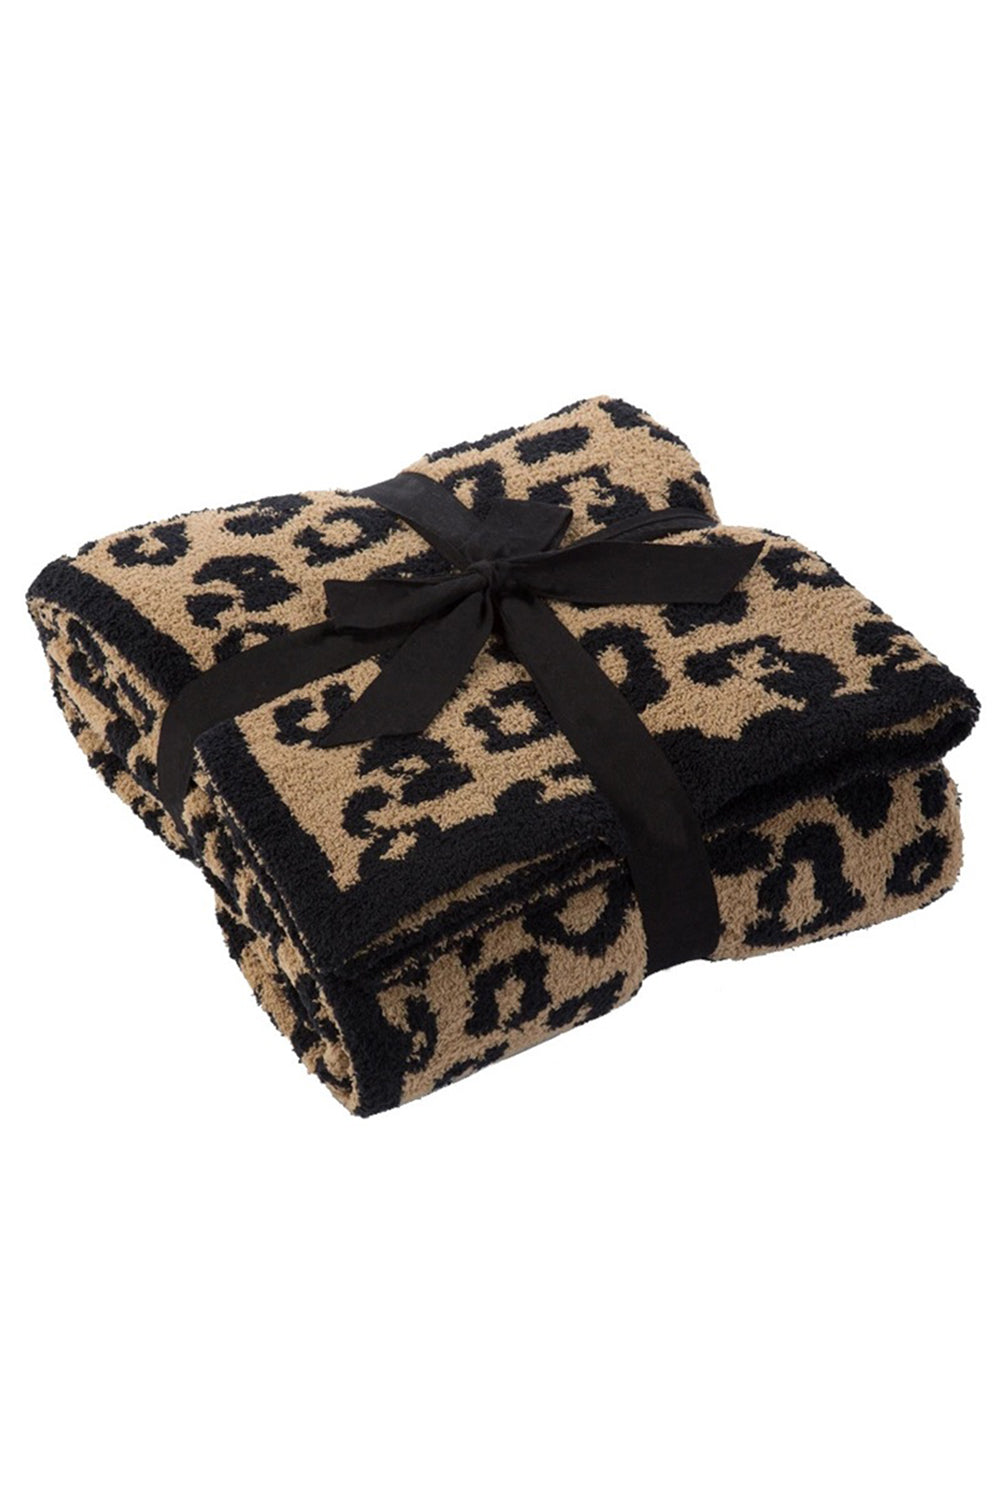 Black Leopard Grain Knitting 127*152cm Blanket